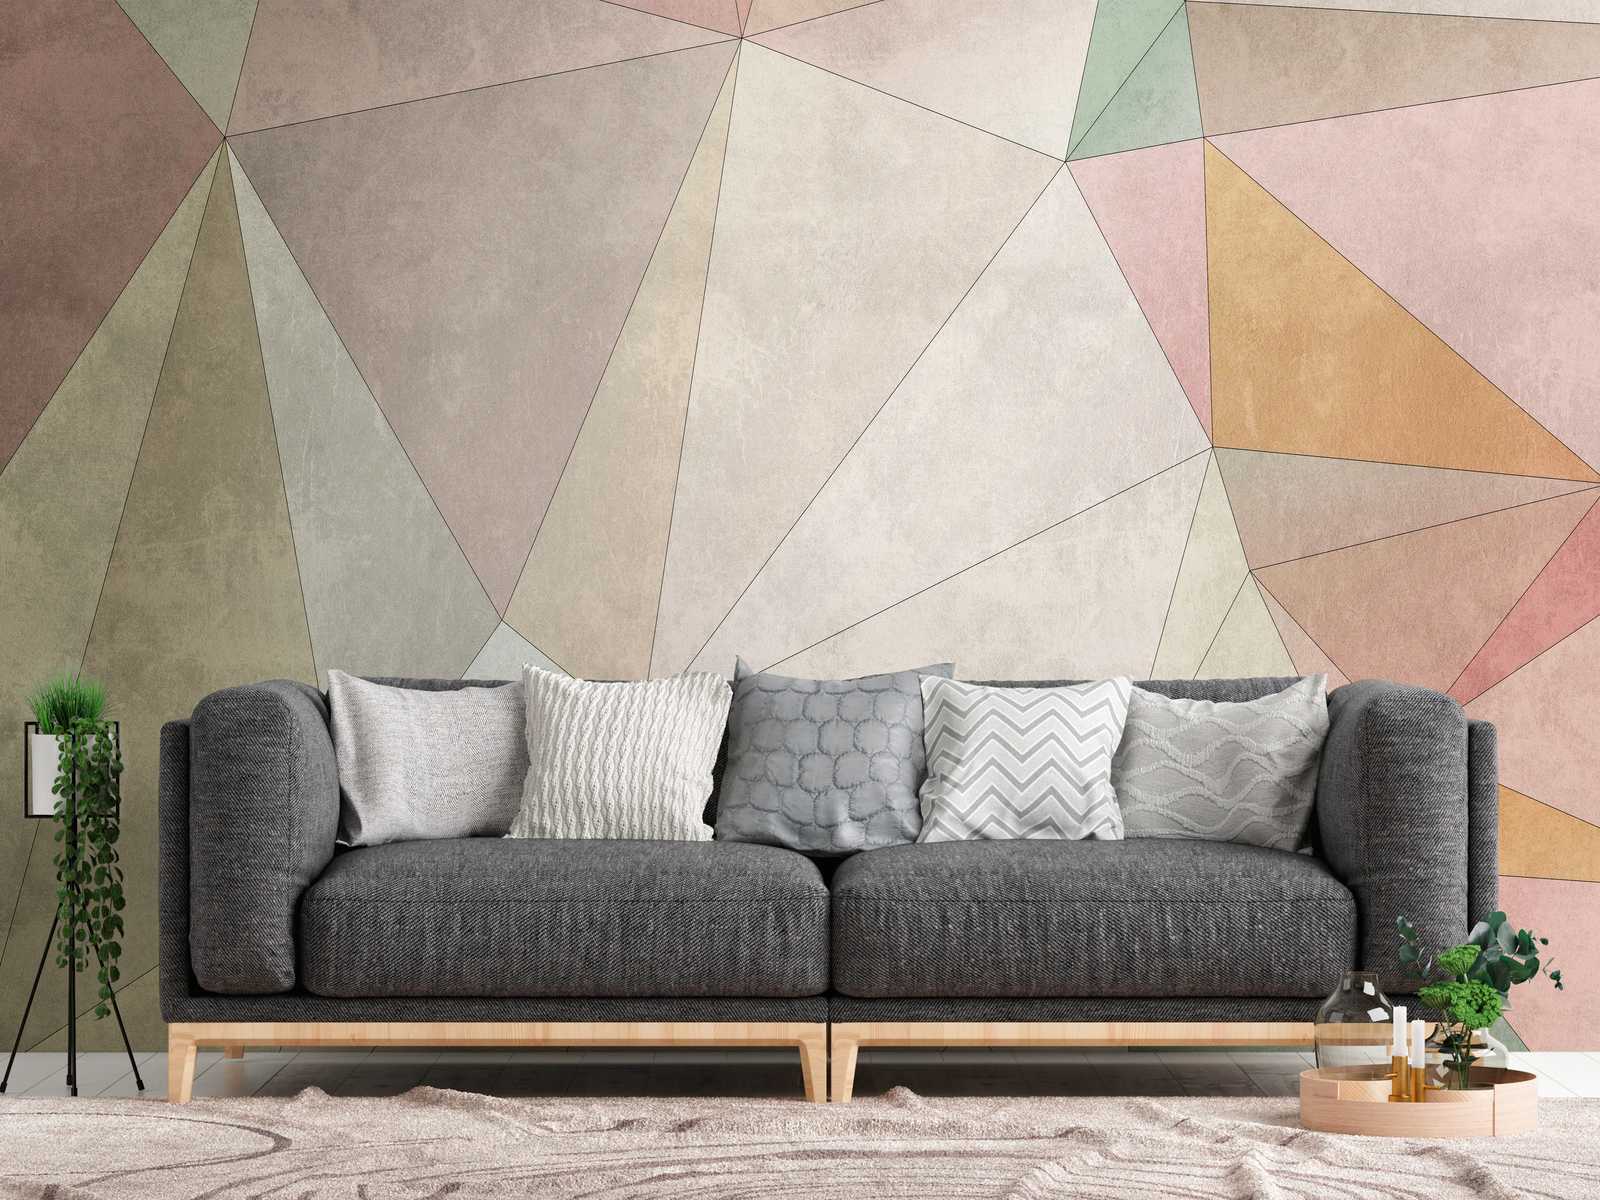             behang nieuwigheid | gips optiek motief behang kleurrijke facetten, colour block graphics
        